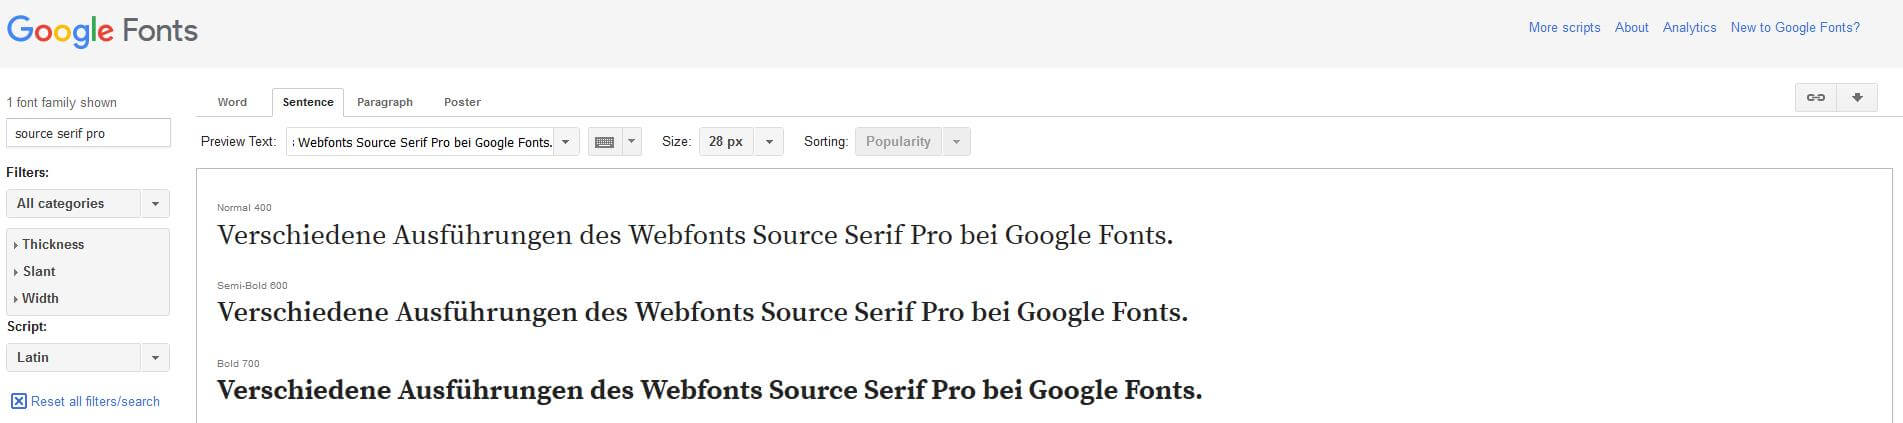 Verschiedene Ausführungen des Webfonts Source Serif Pro bei Google Fonts